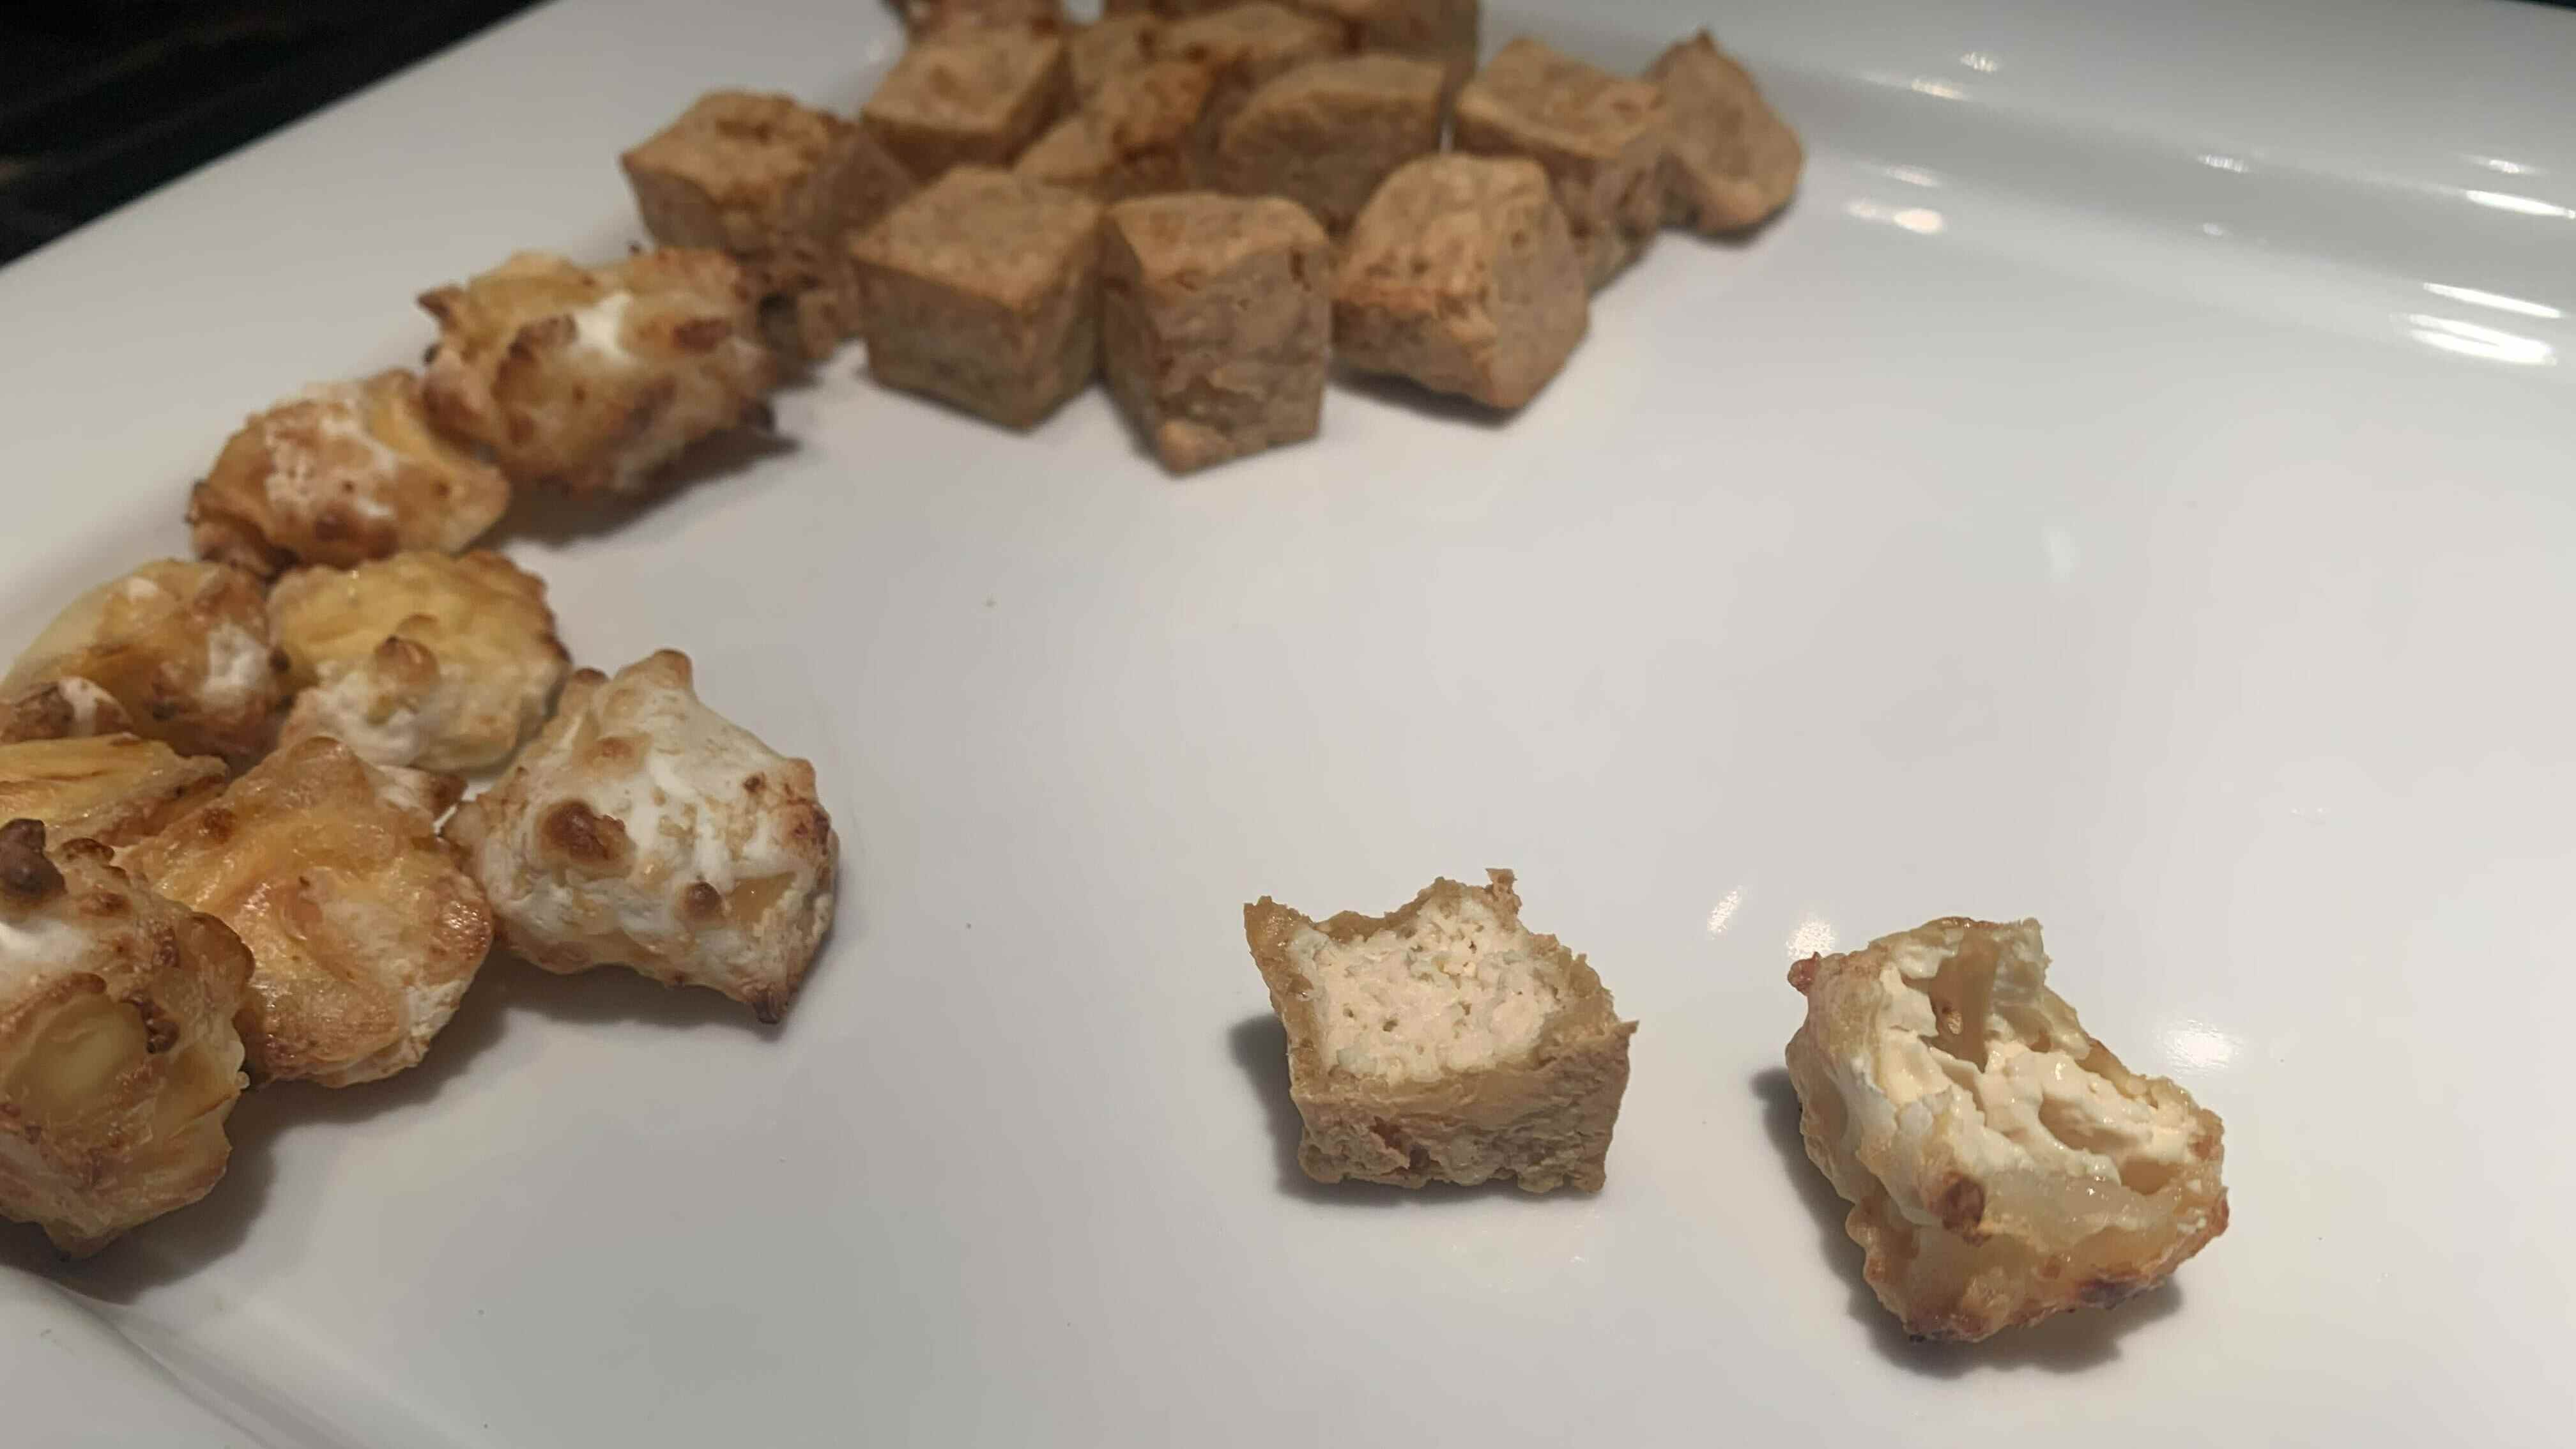 Tofu cuit.  Le tofu soyeux (à droite) a des couches et un croustillant plus fin.  Le tofu plus spongieux (à gauche) a une croûte plus épaisse et une texture de tofu plus dense